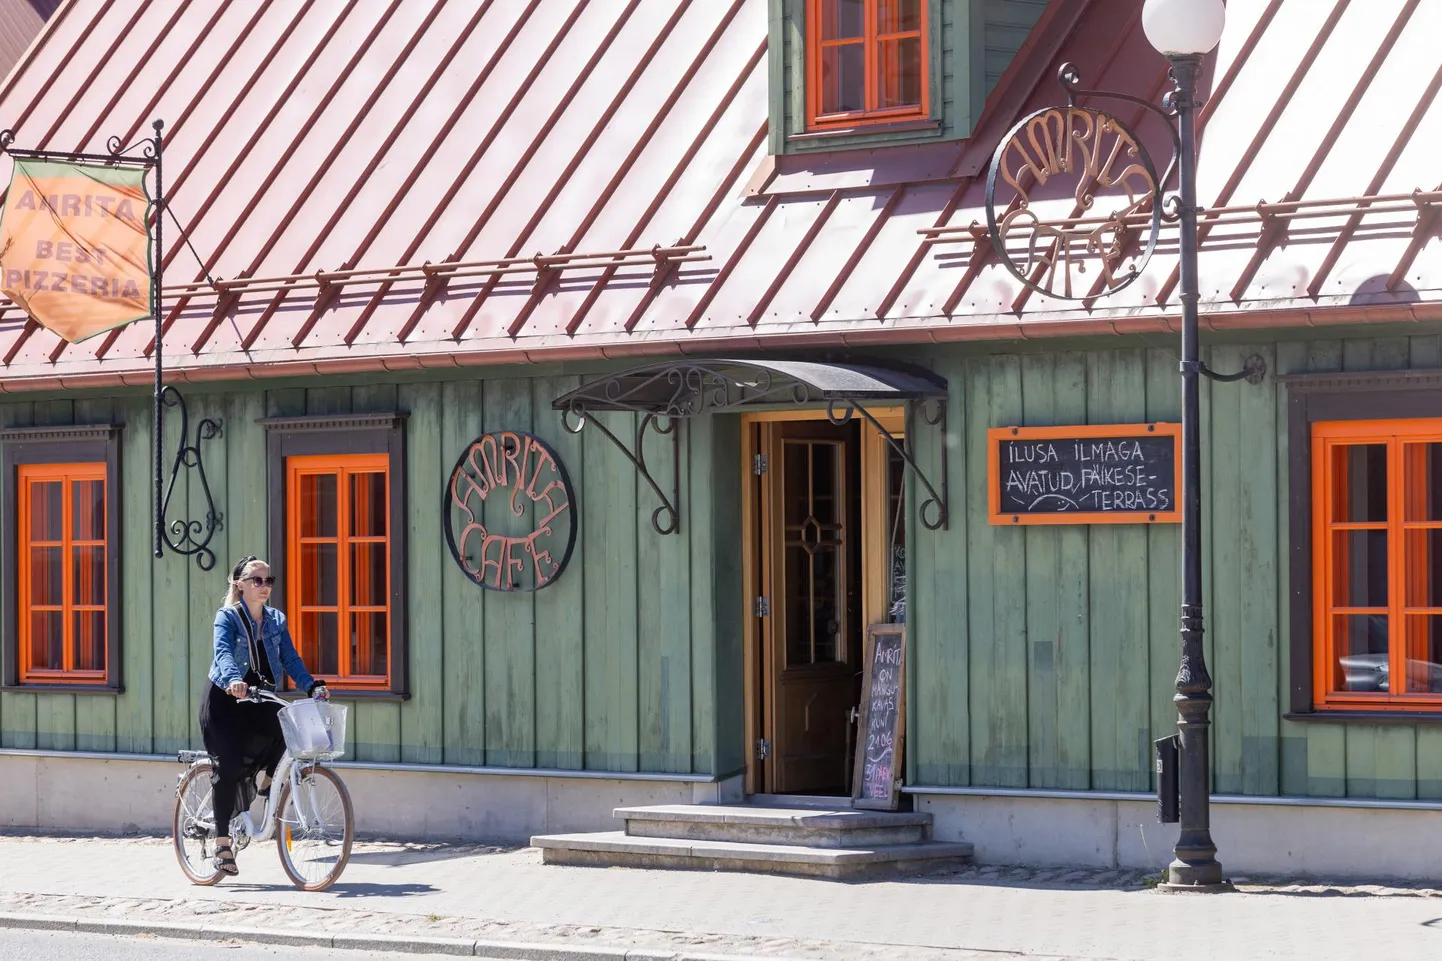 Amrita Cafe on Viljandis tegutsenud kümme aastat. Nüüd sulgevad omanikud selle raske südamega.